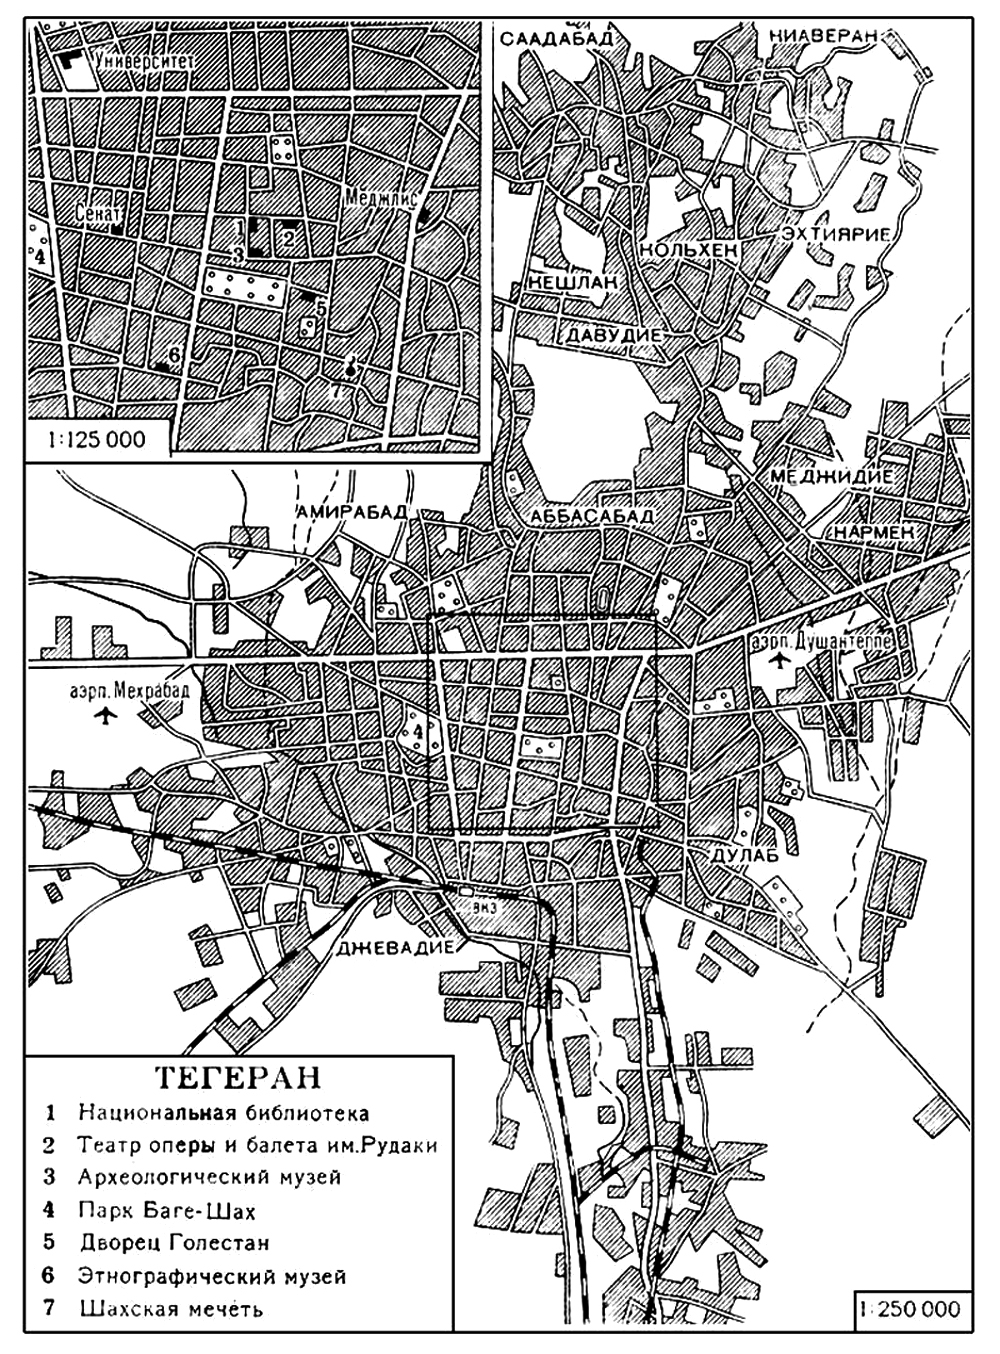 Тегеран (план города)